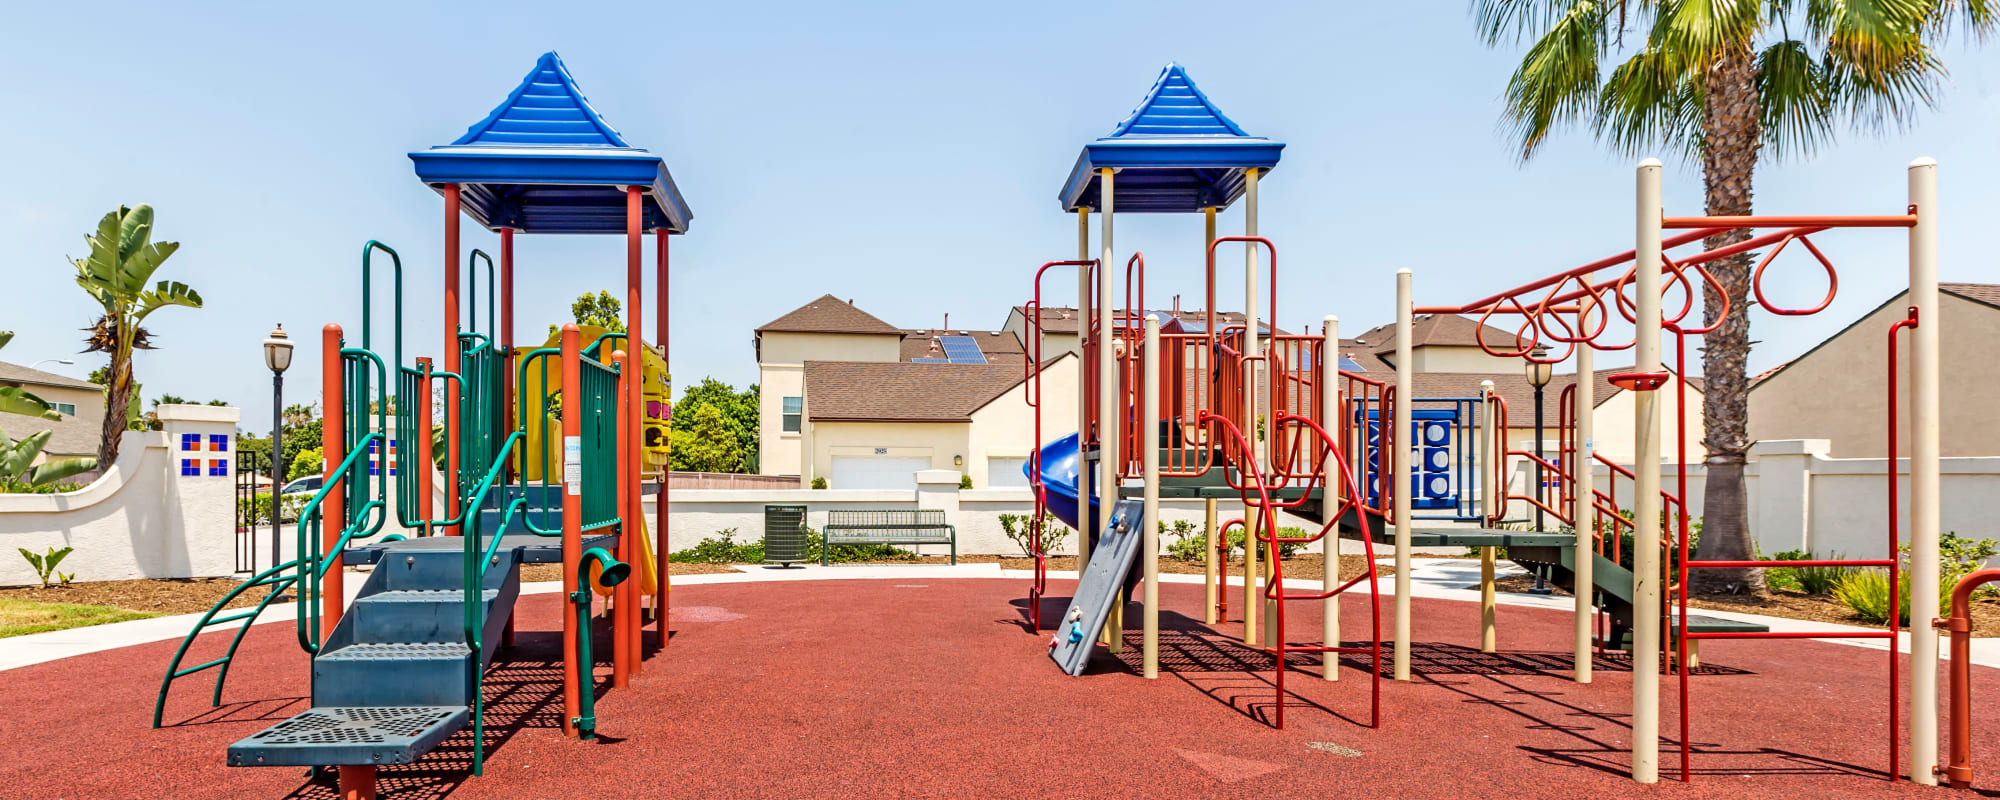 A playground at Gateway Village in San Diego, California